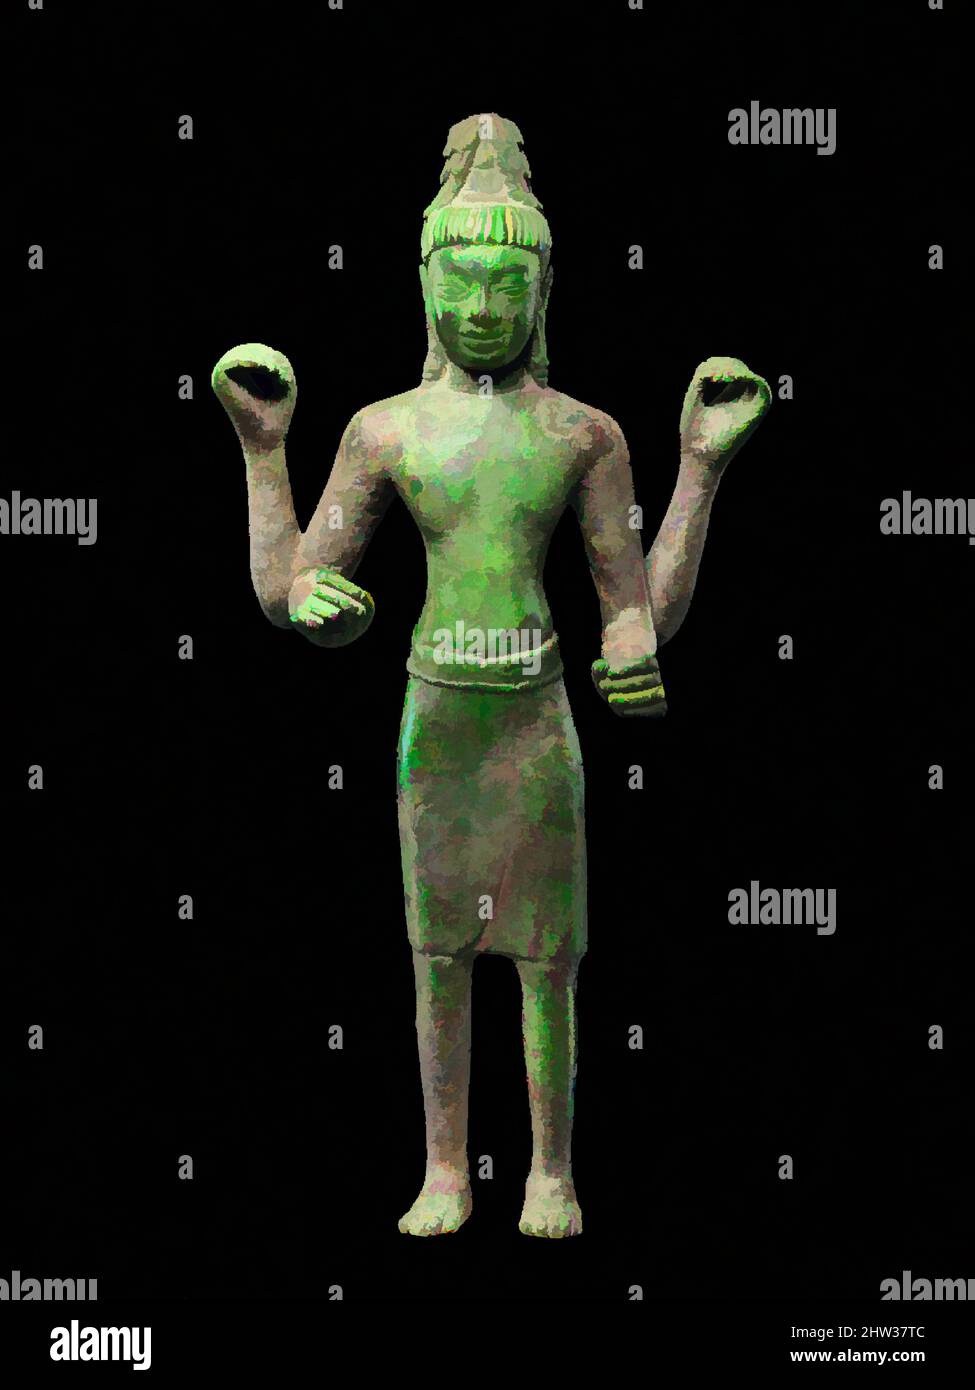 Kunst inspiriert von Bodhisattva Avaolkiteshvara, vor Angkor, zweite Hälfte des 7..–frühen 8.. Jahrhunderts, Westkambodschan, Kupferlegierung, H. 13 3/4 Zoll (34,9 cm); B: 6 3/4 Zoll (17,1 cm); D. 2 7/8 Zoll (7,3 cm); Gewicht geschätzt 6 lbs (2,7 kg), Skulptur, Diese vierarmige Avalokiteshvara erzählt, Klassische Werke von Artotop mit einem Schuss Moderne modernisiert. Formen, Farbe und Wert, auffällige visuelle Wirkung auf Kunst. Emotionen durch Freiheit von Kunstwerken auf zeitgemäße Weise. Eine zeitlose Botschaft, die eine wild kreative neue Richtung verfolgt. Künstler, die sich dem digitalen Medium zuwenden und die Artotop NFT erschaffen Stockfoto